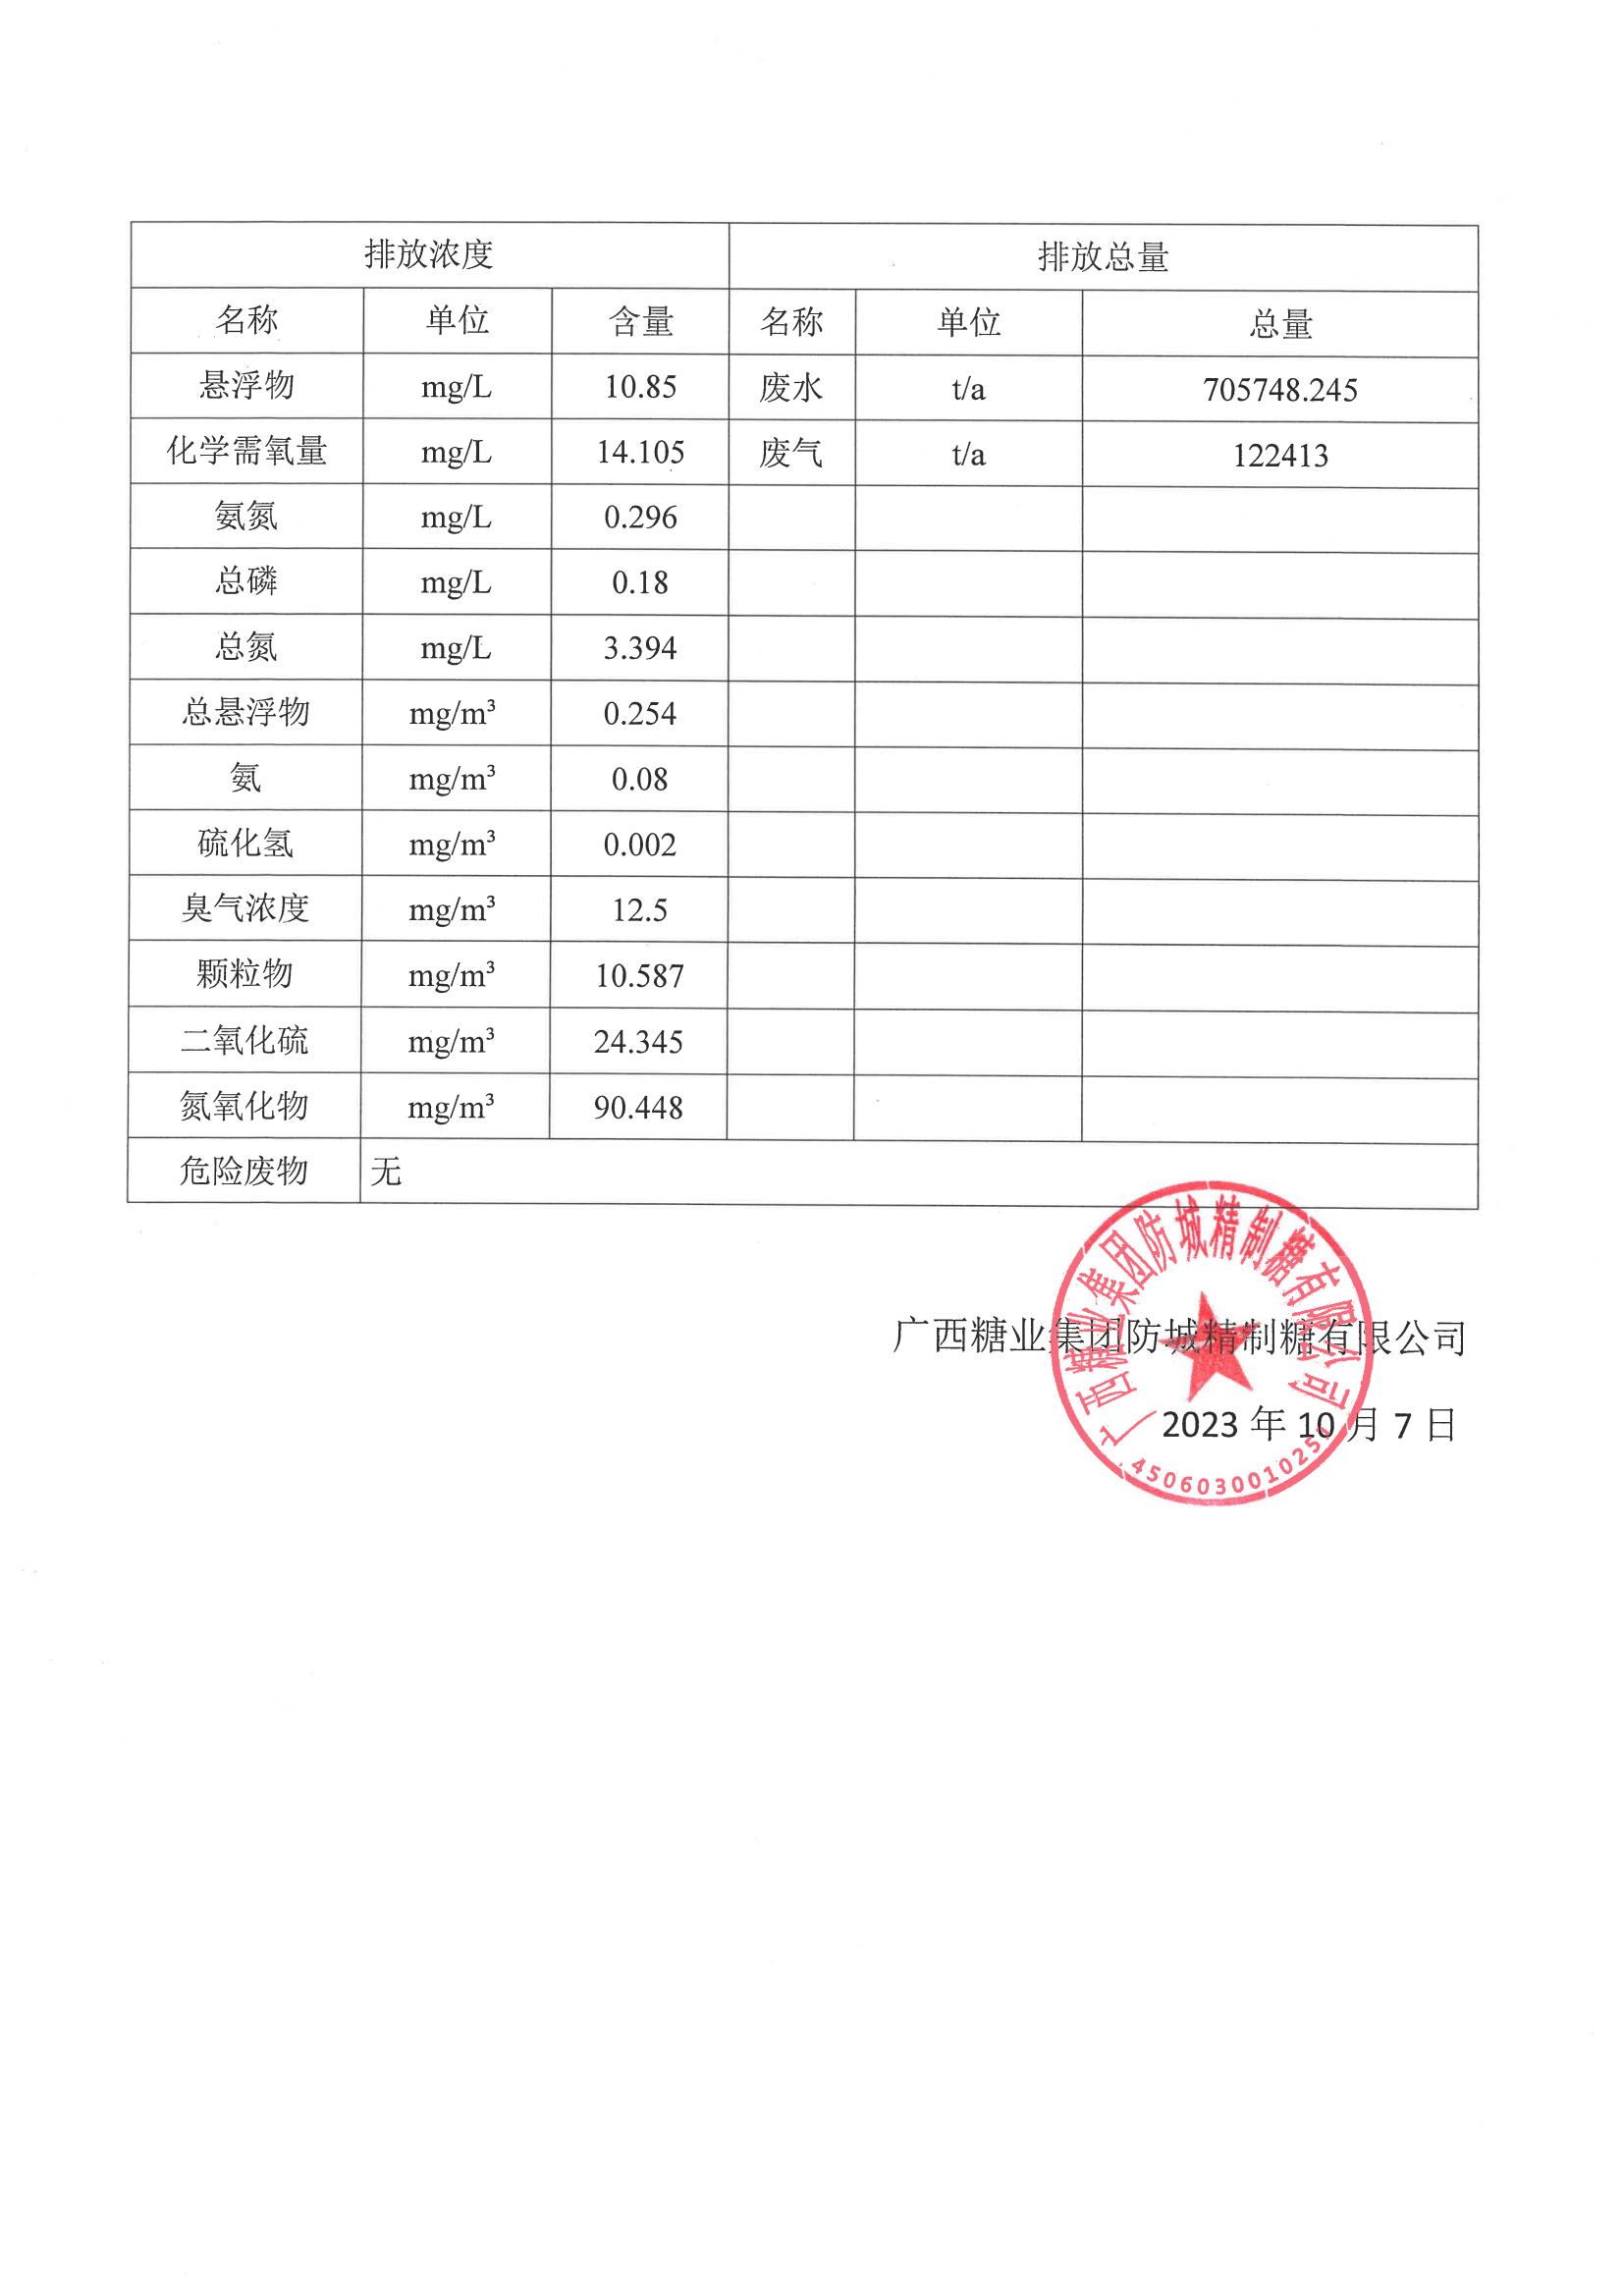 篮球买球APP官方官网「中国」有限公司防城精制糖有限公司清洁生产审核信息公示(4)(1)_01.jpg